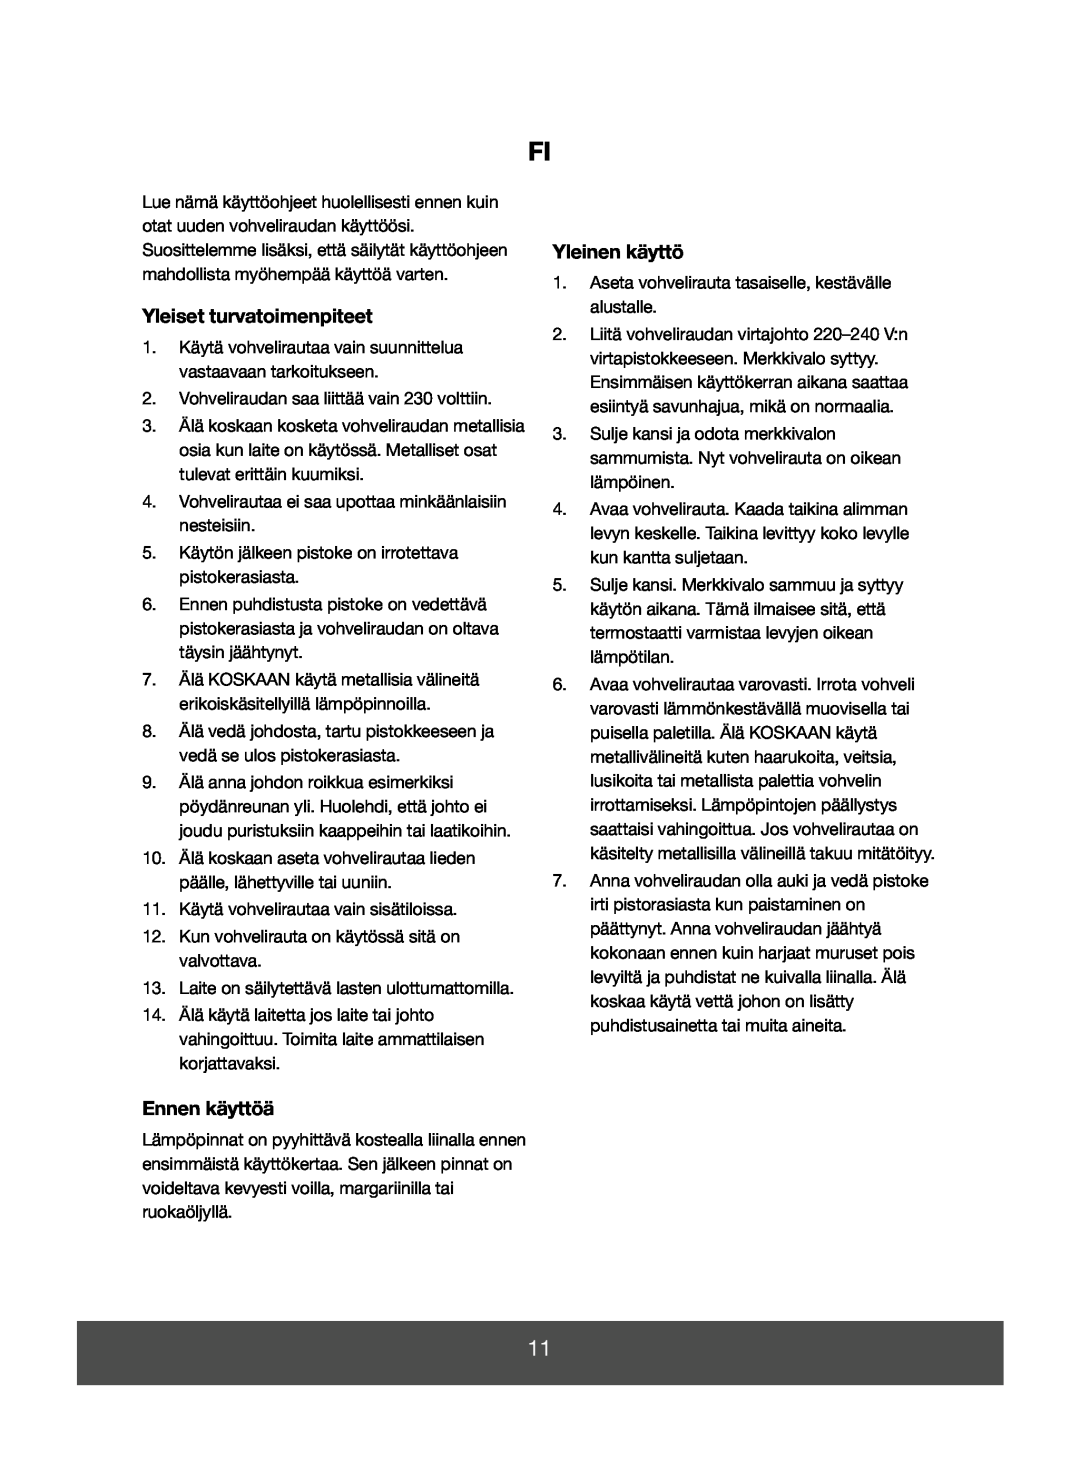 Melissa 643-008 manual Yleiset turvatoimenpiteet, Ennen käyttöä, Yleinen käyttö 